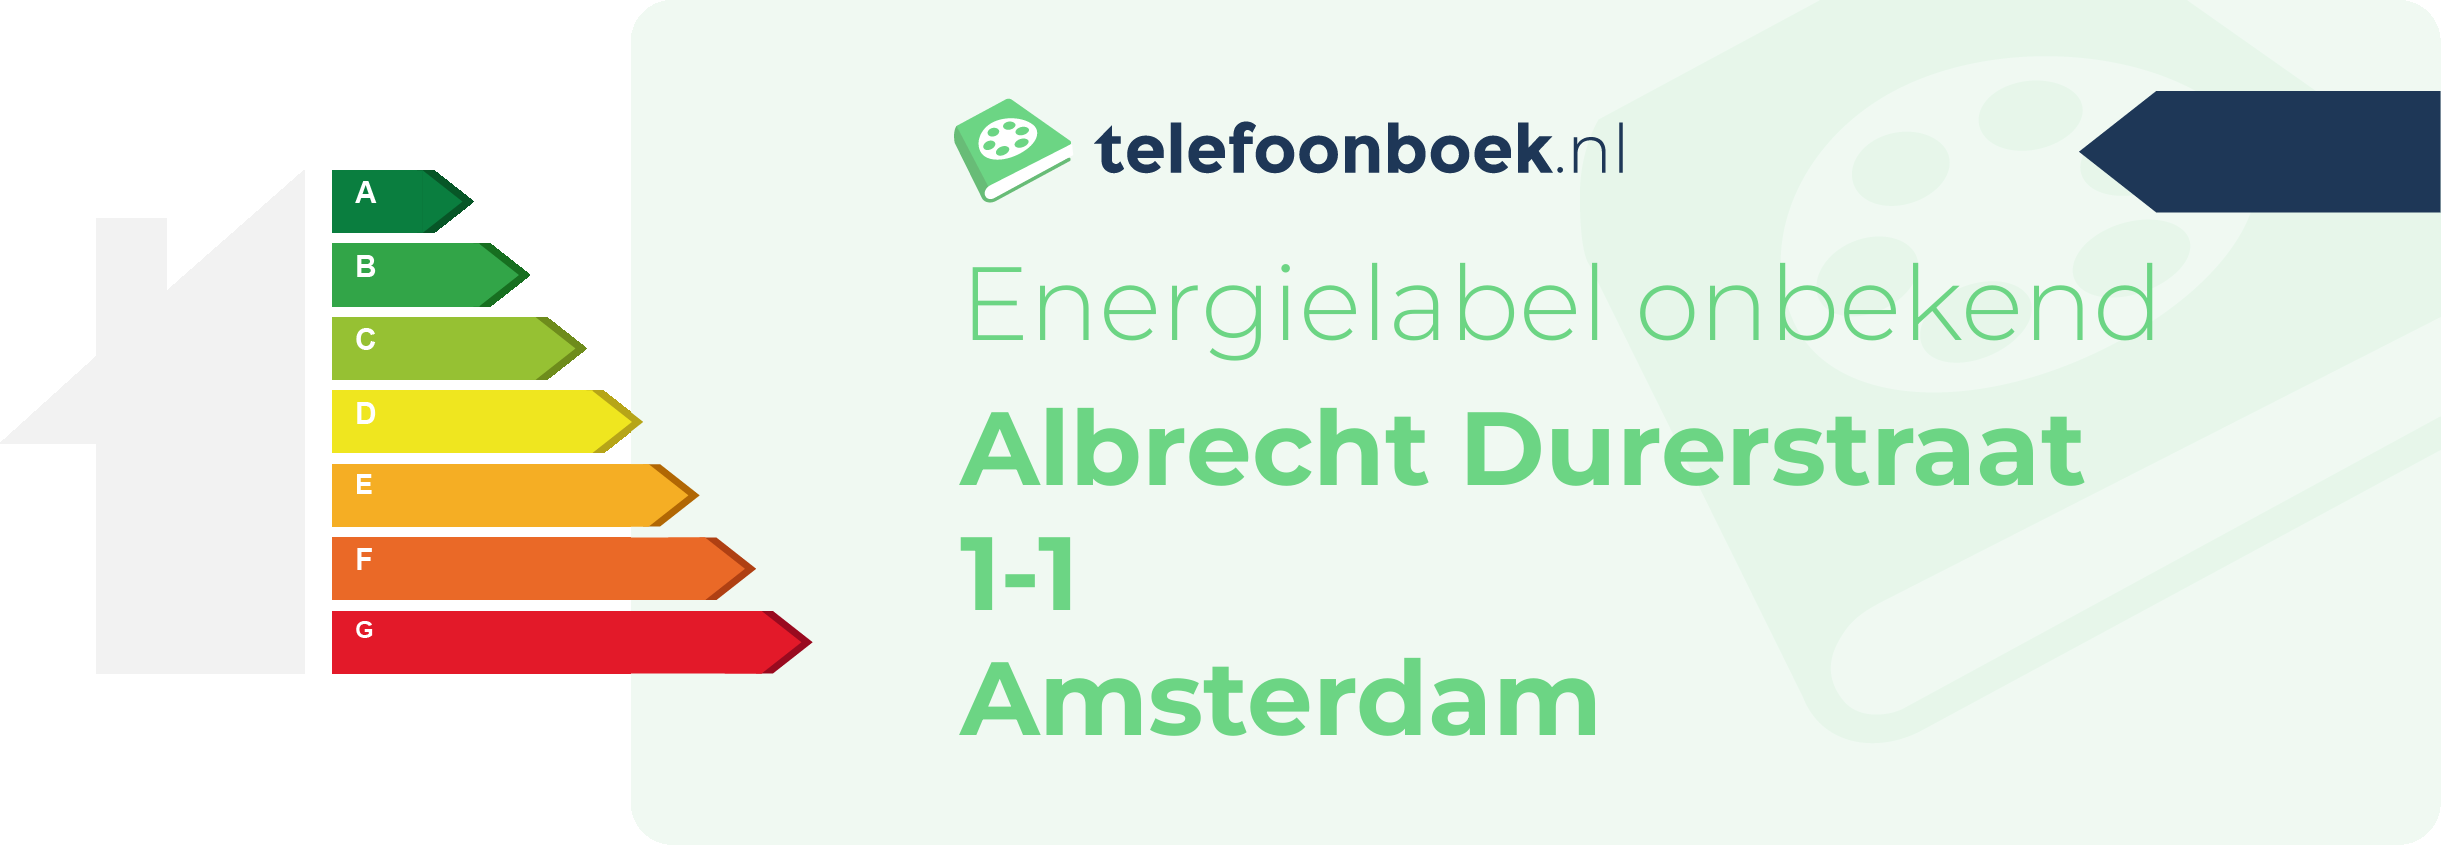 Energielabel Albrecht Durerstraat 1-1 Amsterdam